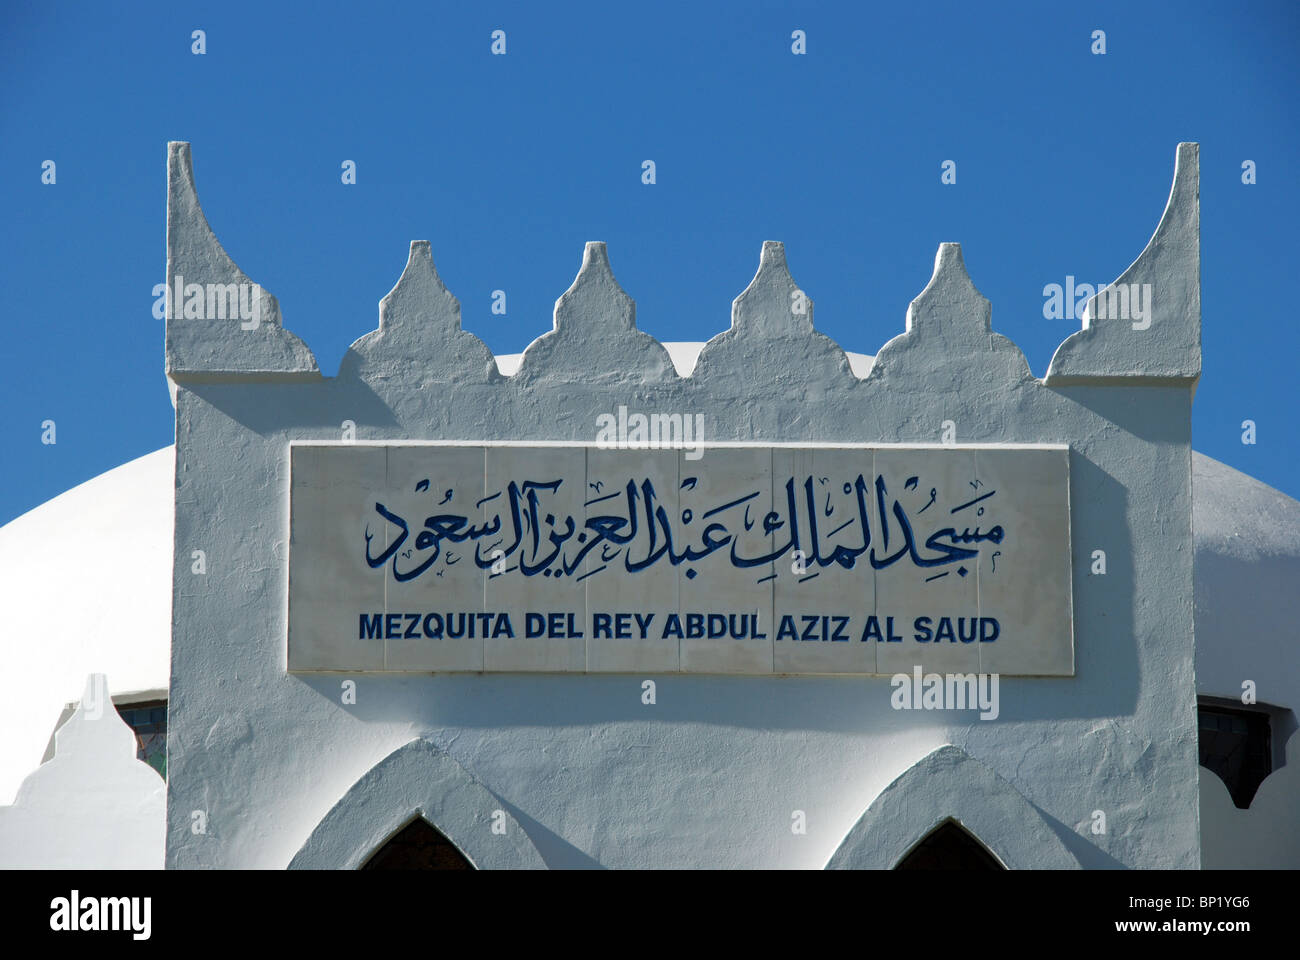 King Abdul Aziz Al Saud Mosque, Marbella, Costa del Sol, Malaga Province, Andalucia, Spain, Western Europe. Stock Photo